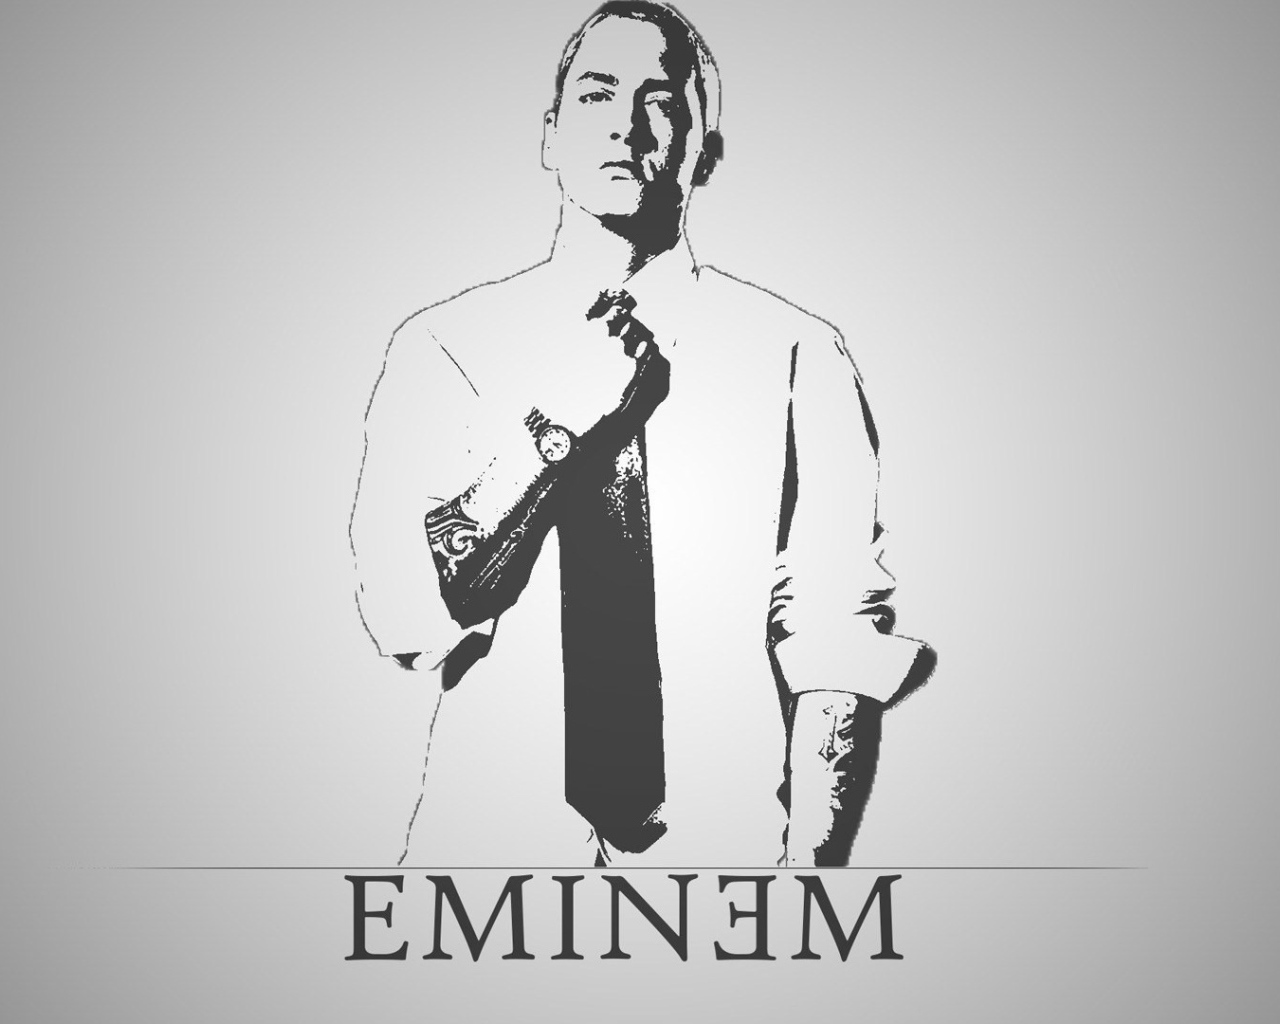 Rapper Eminem